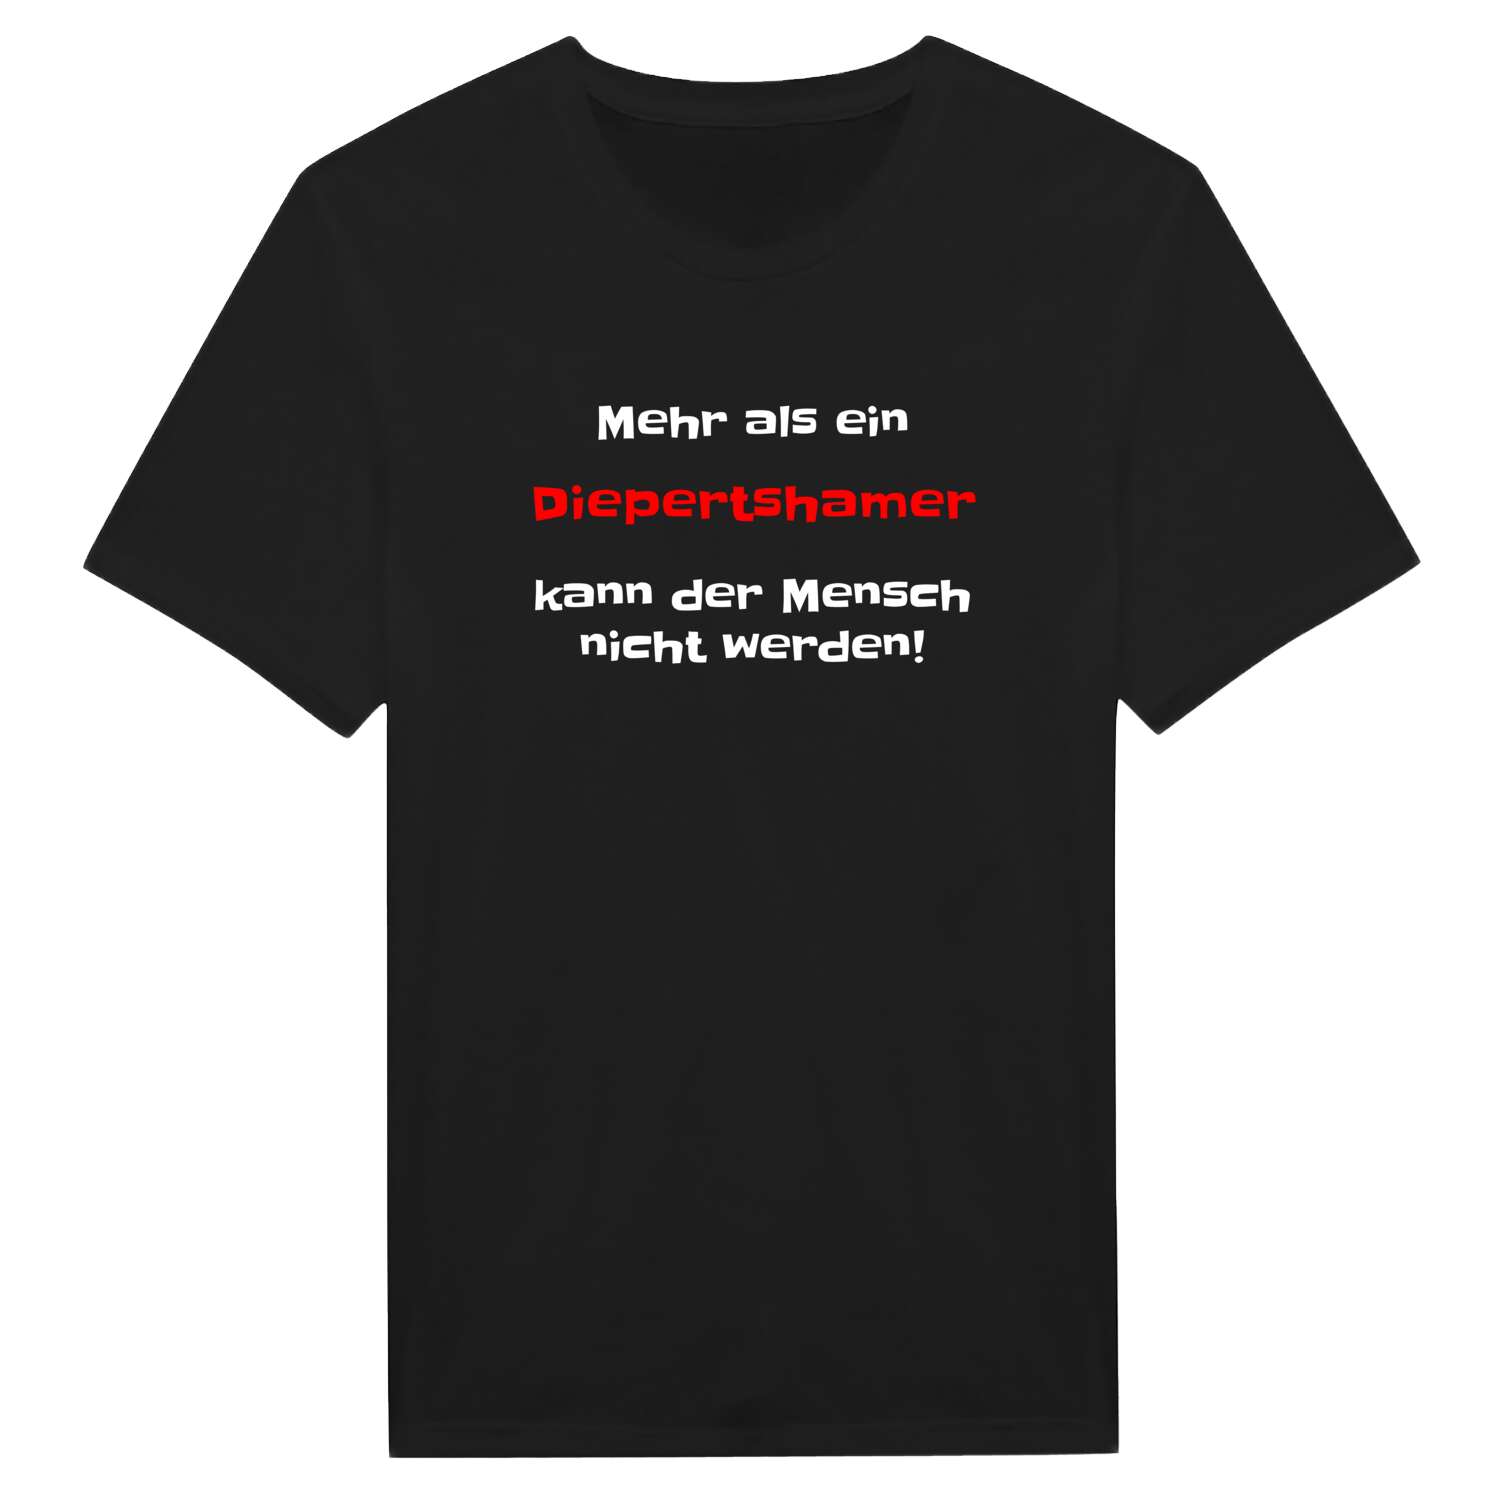 Diepertsham T-Shirt »Mehr als ein«